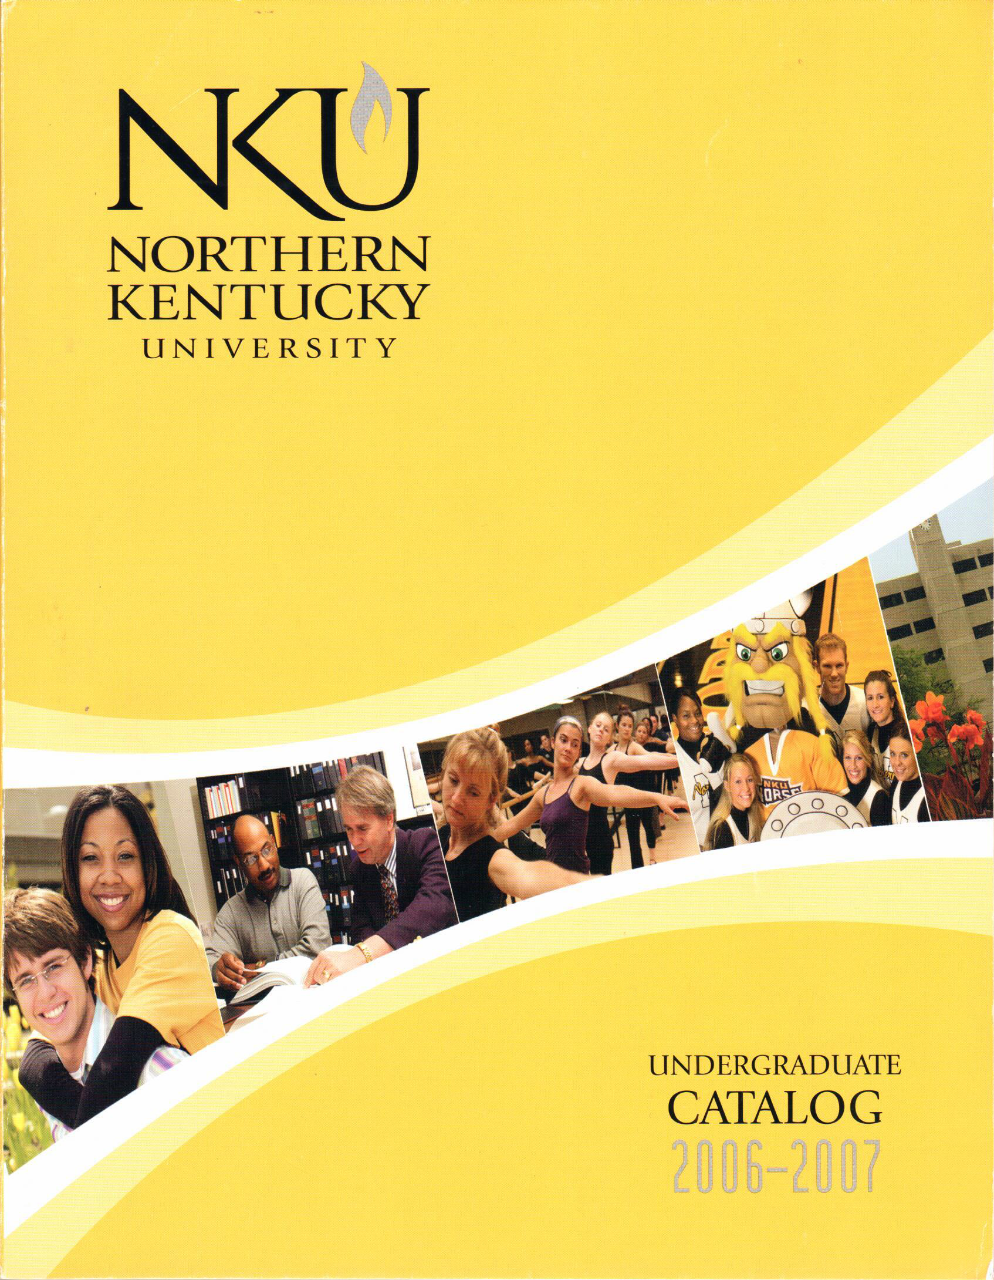 2006-2007 undergraduate catalog